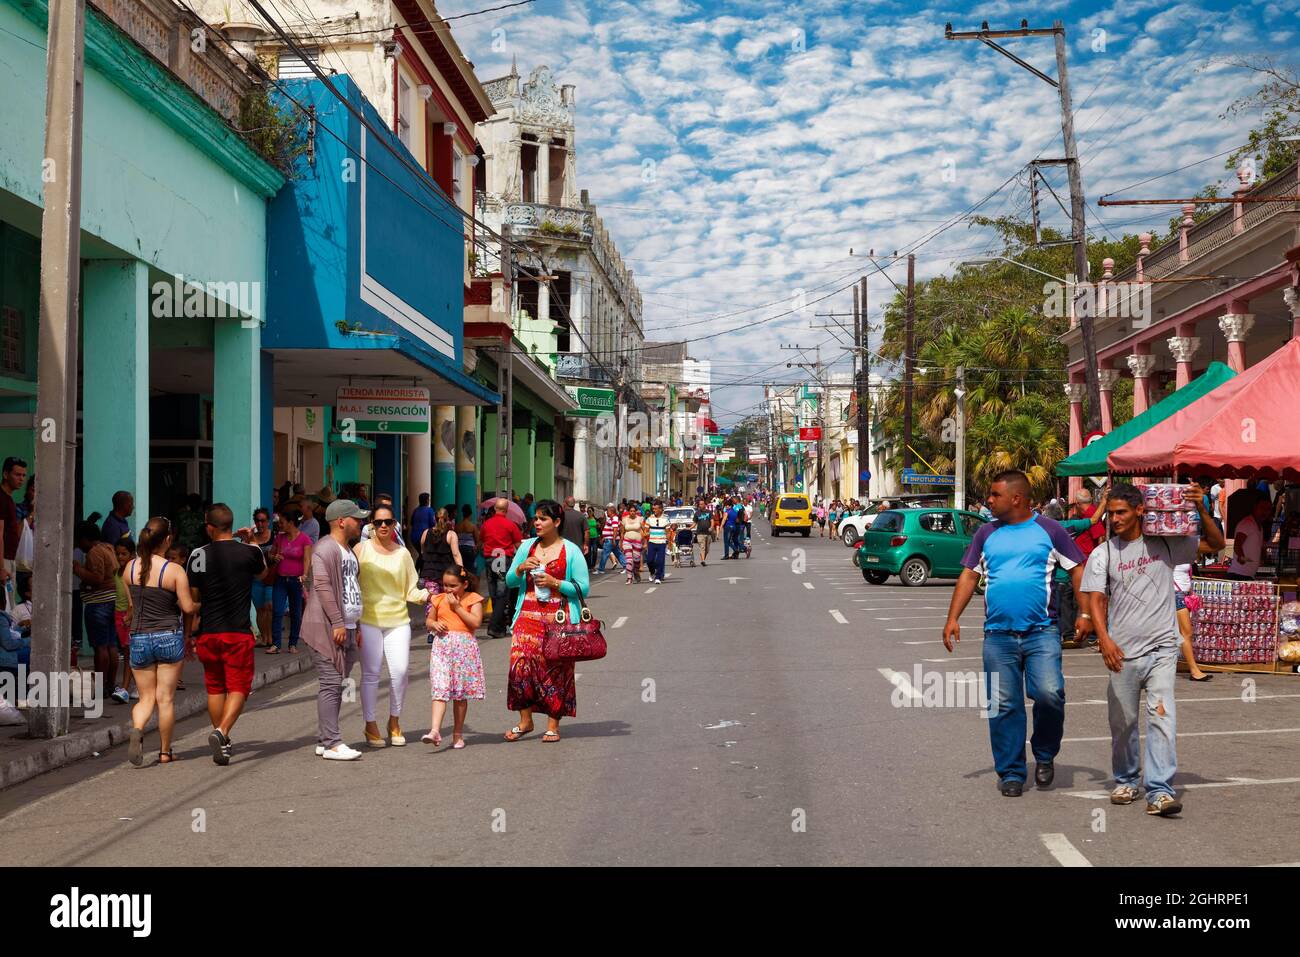 Scena stradale, molte persone sulla strada, cubani, case coloniali, Pinar del Rio, Pinar del Rio Provincia, Caraibi, Cuba Foto Stock